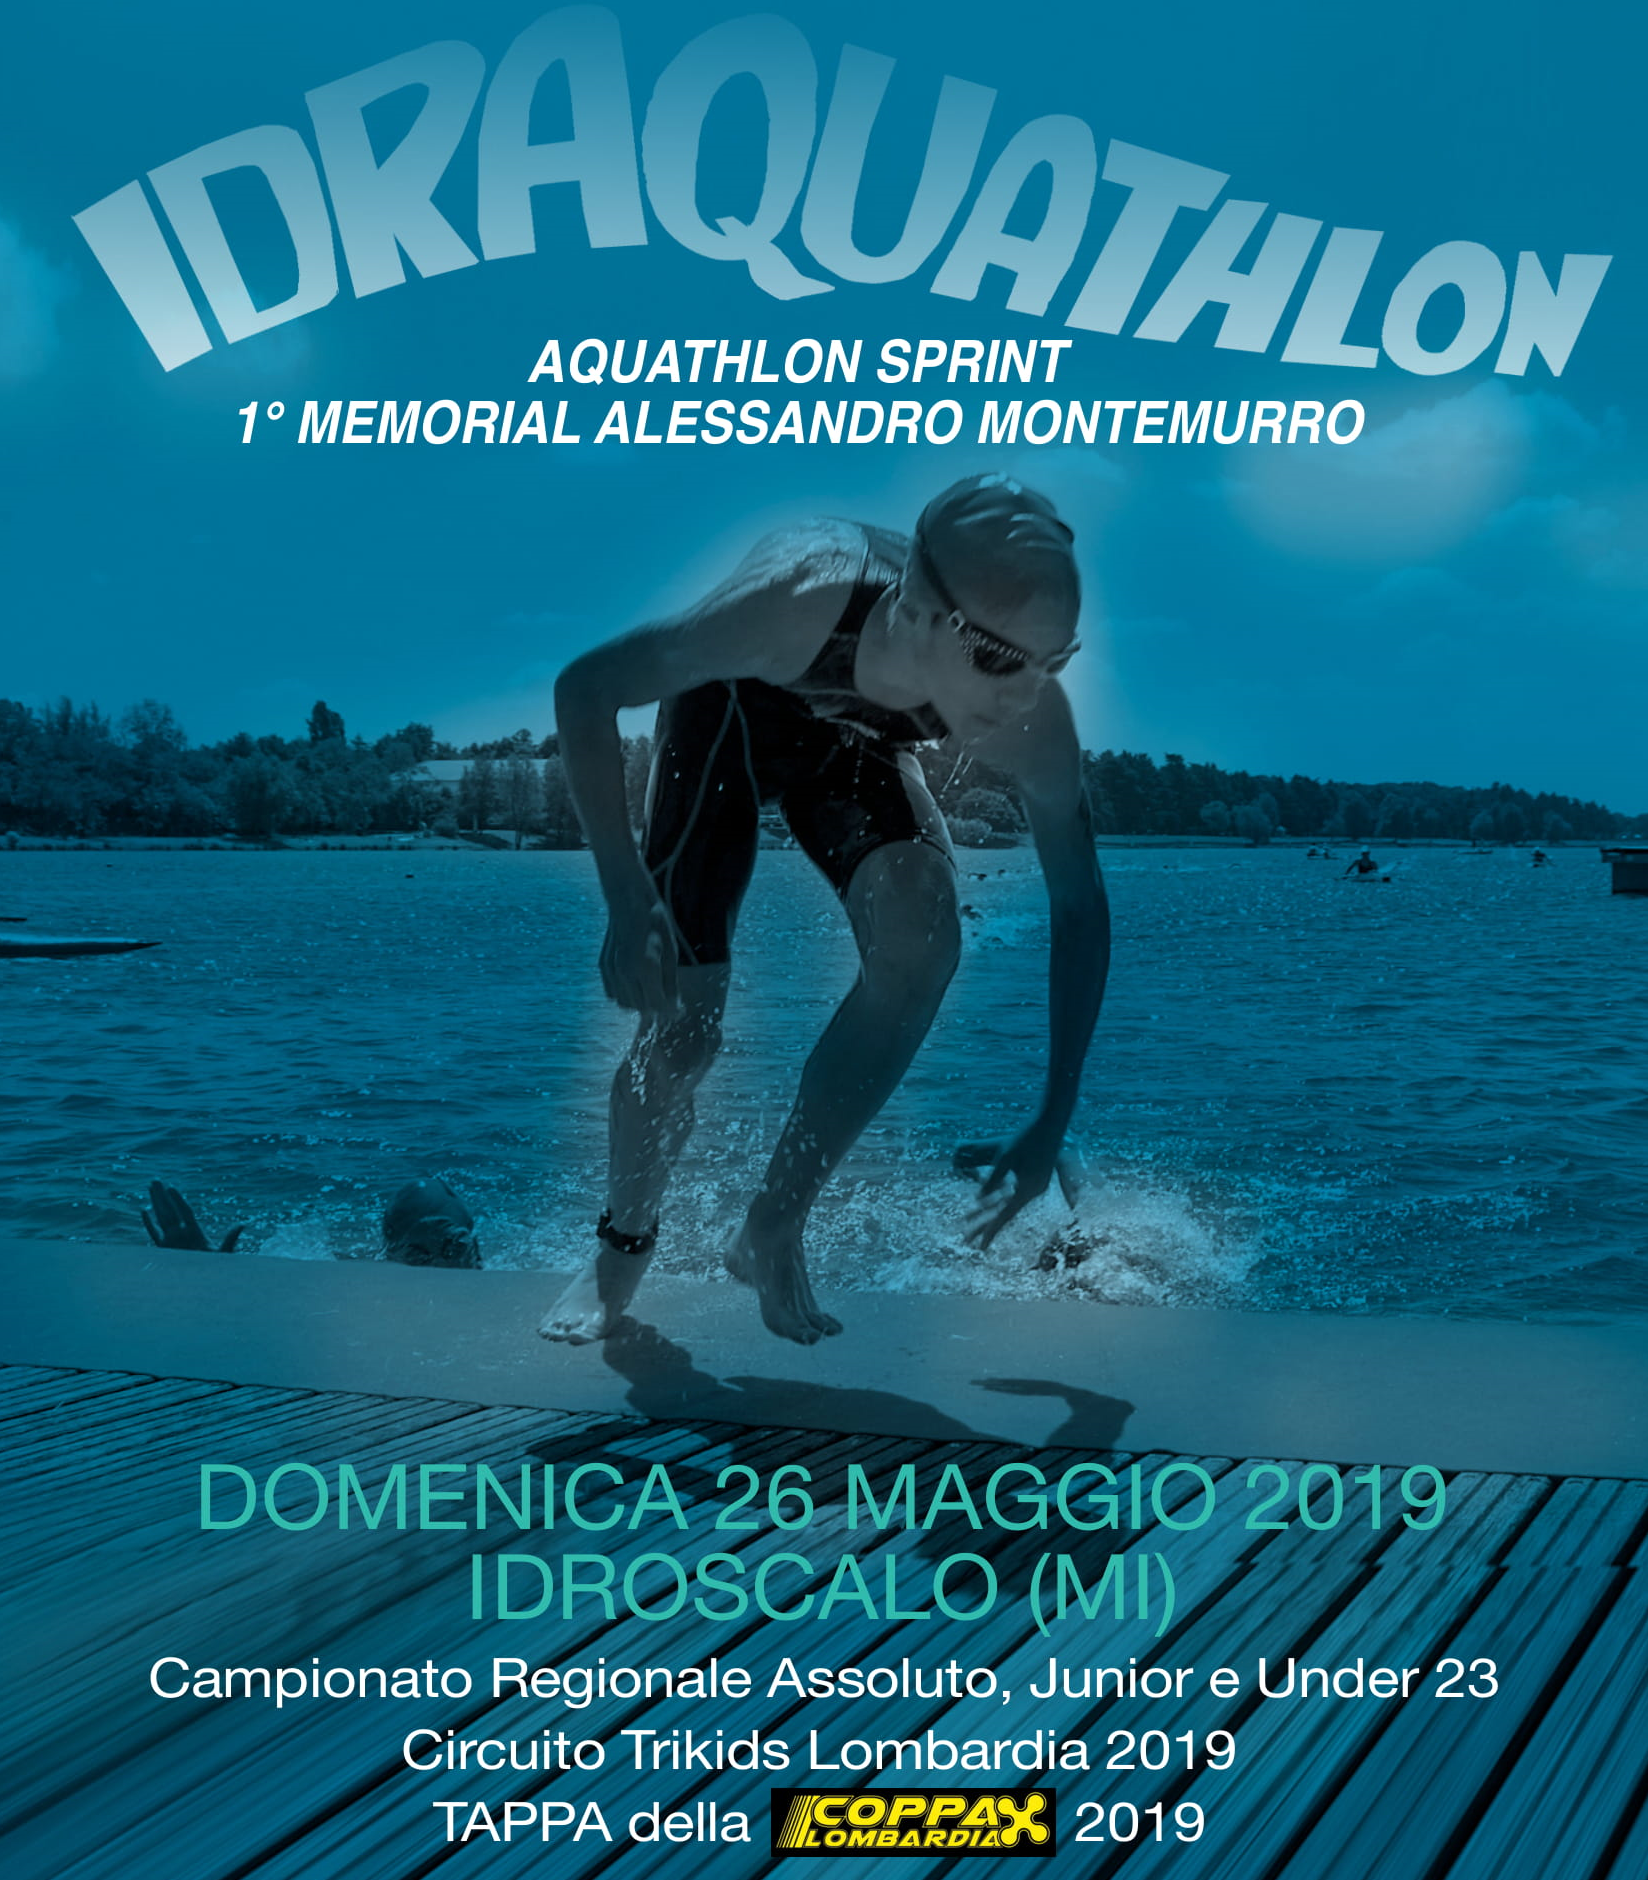 Idraquathlon, 1° memorial Alessandro Montemurro all'idroscalo il 26 maggio